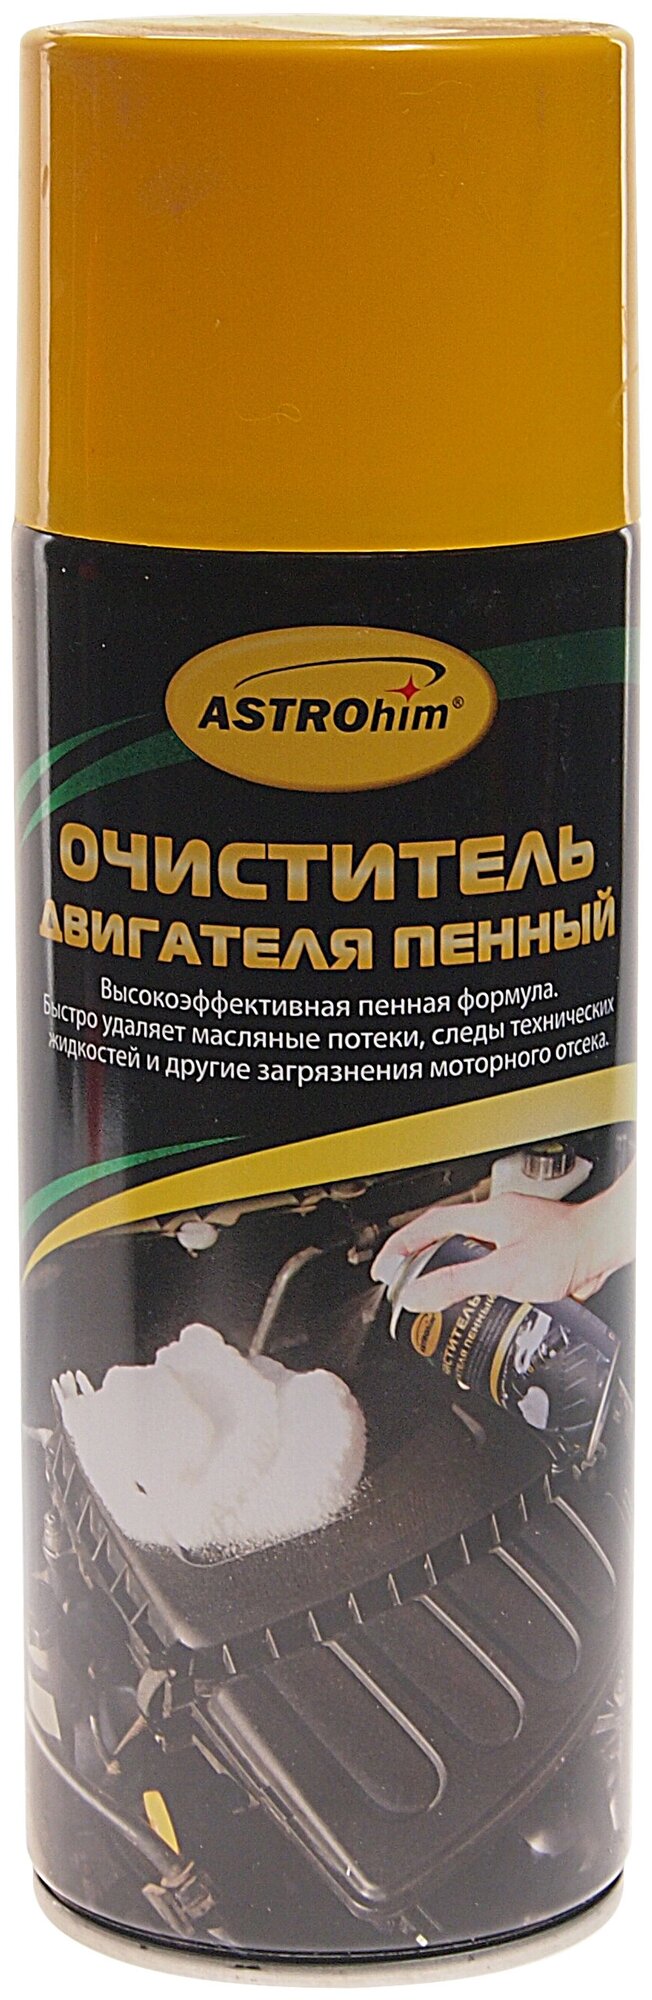 Очиститель двигателя Astrohim пенный 520 мл AC-387